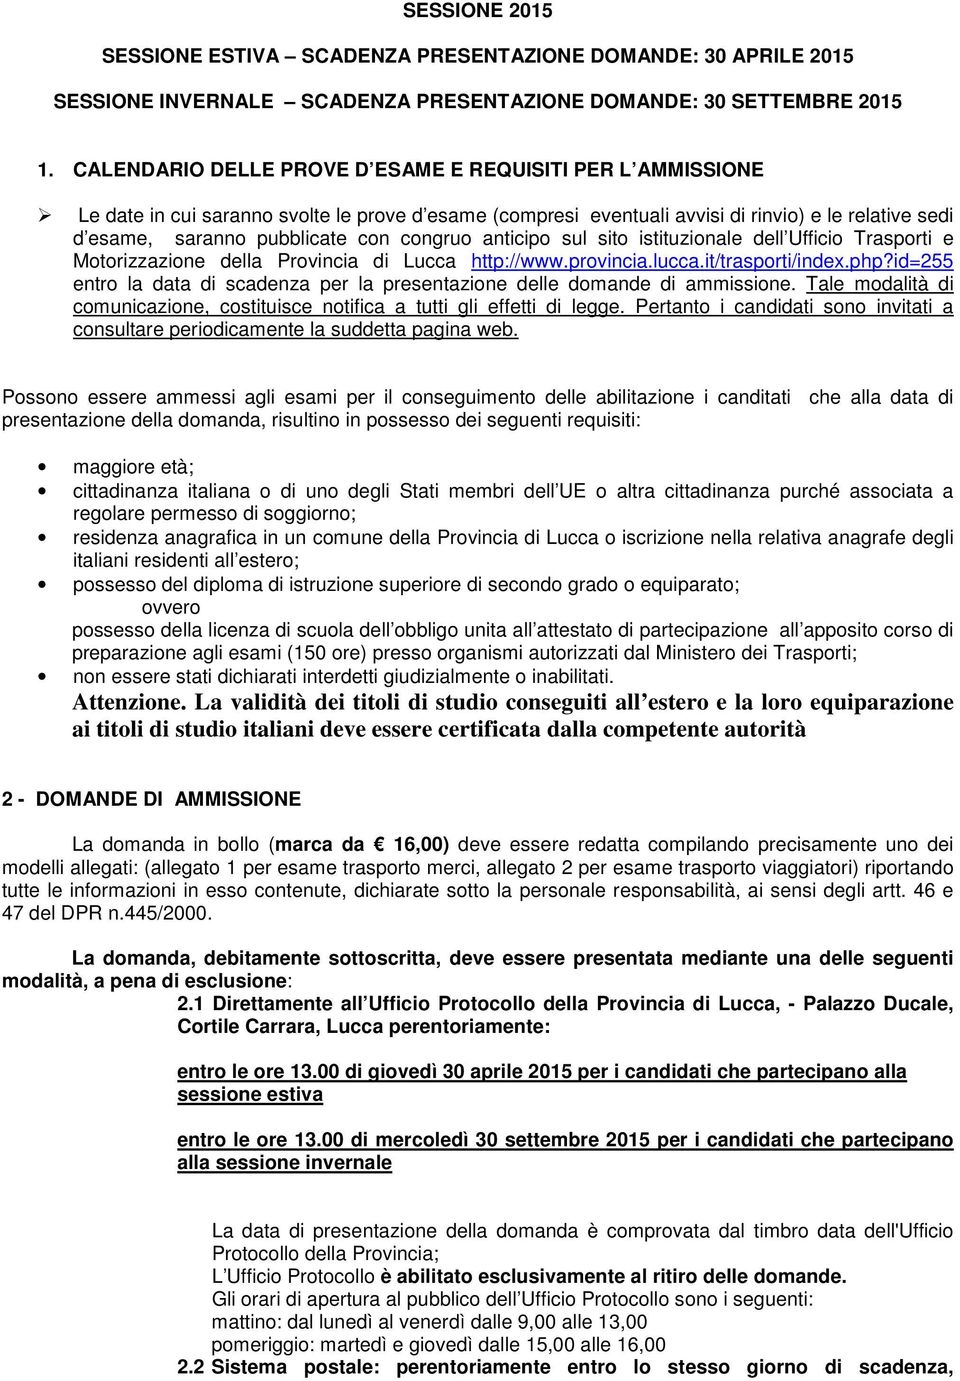 congruo anticipo sul sito istituzionale dell Ufficio Trasporti e Motorizzazione della Provincia di Lucca http://www.provincia.lucca.it/trasporti/index.php?